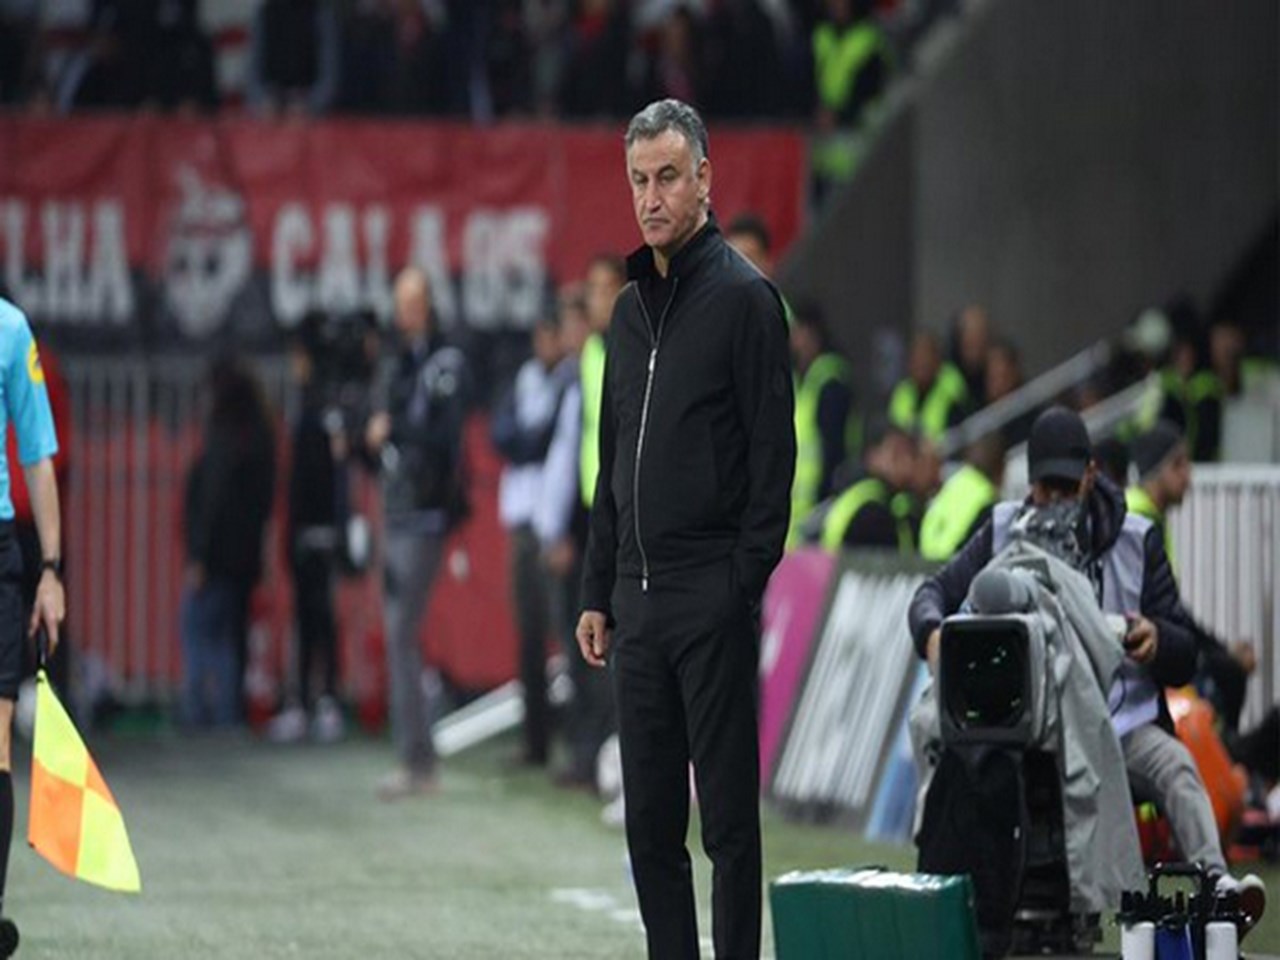 L’entraîneur du Paris Saint-Germain Christophe Galtier critique les supporters niçois après la victoire du Paris Saint-Germain en Ligue 1